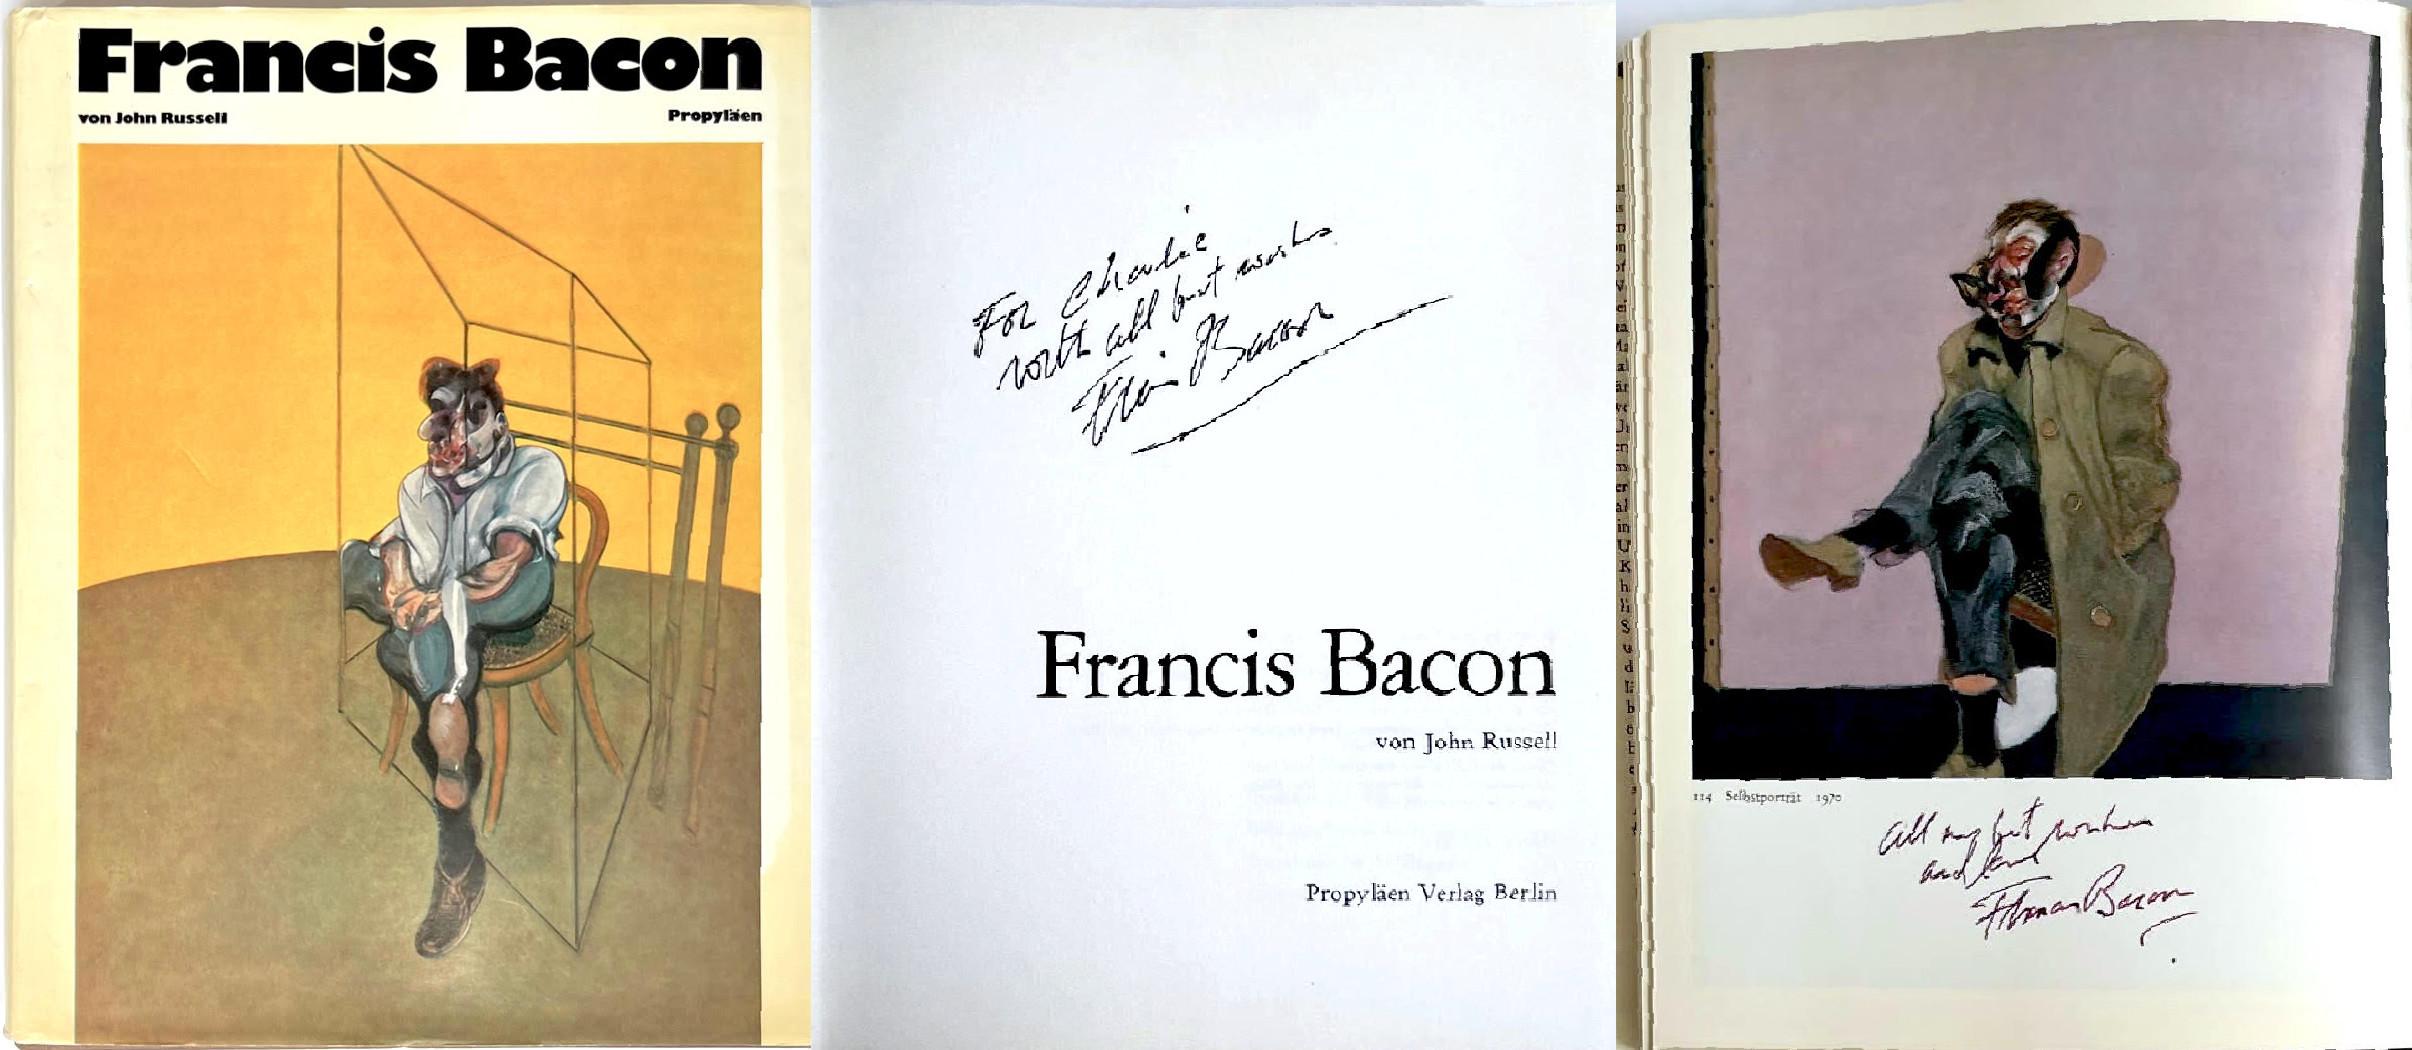 Äußerst begehrtes Sammlerstück:
Francis Bacon von [mit] John Russell (Monographie, von Francis Bacon zweimal handsigniert und beschriftet), 1972
Gebundene Monographie mit Schutzumschlag (handsigniert und zweimal mit Tinte beschriftet)
Handsigniert